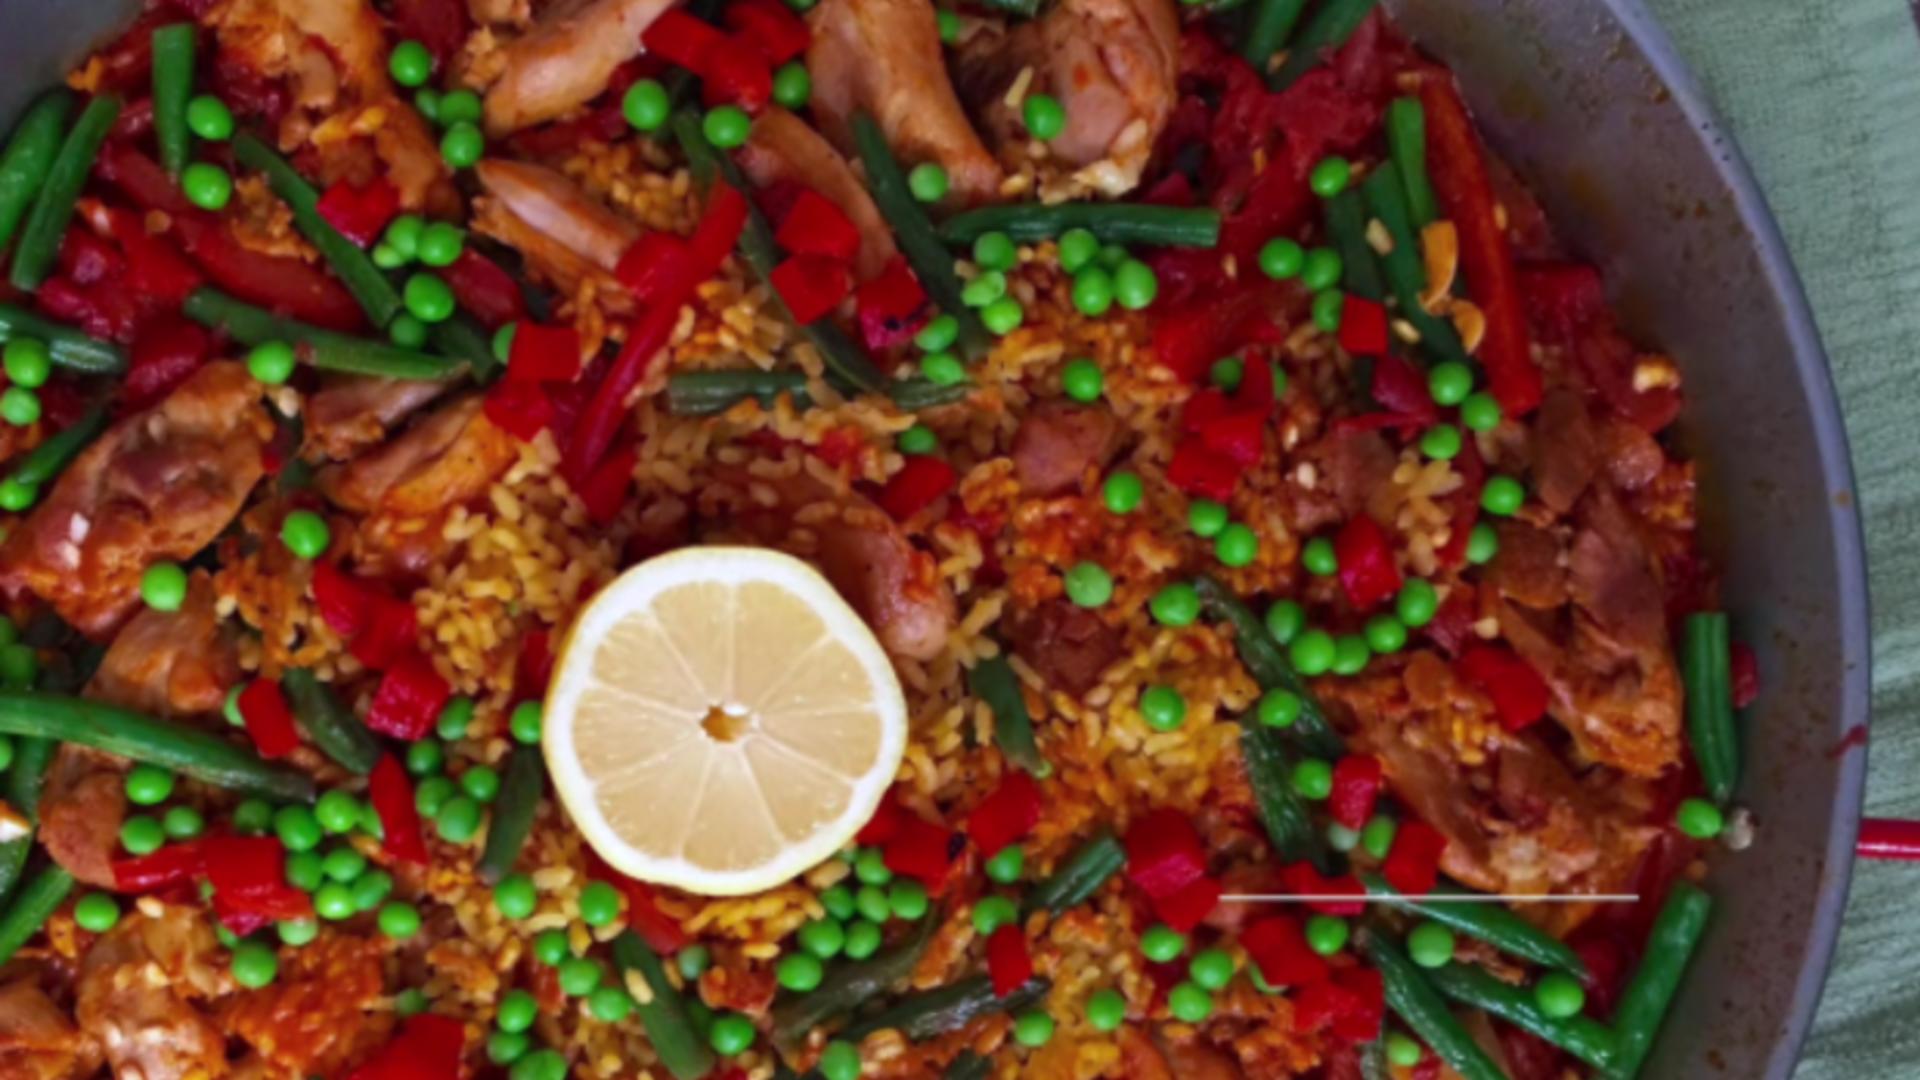 Deliciul spaniol cu arome intense, acum și la tine pe masă. Cum prepari celebra paella cu pui - Rețeta cu legume de sezon 